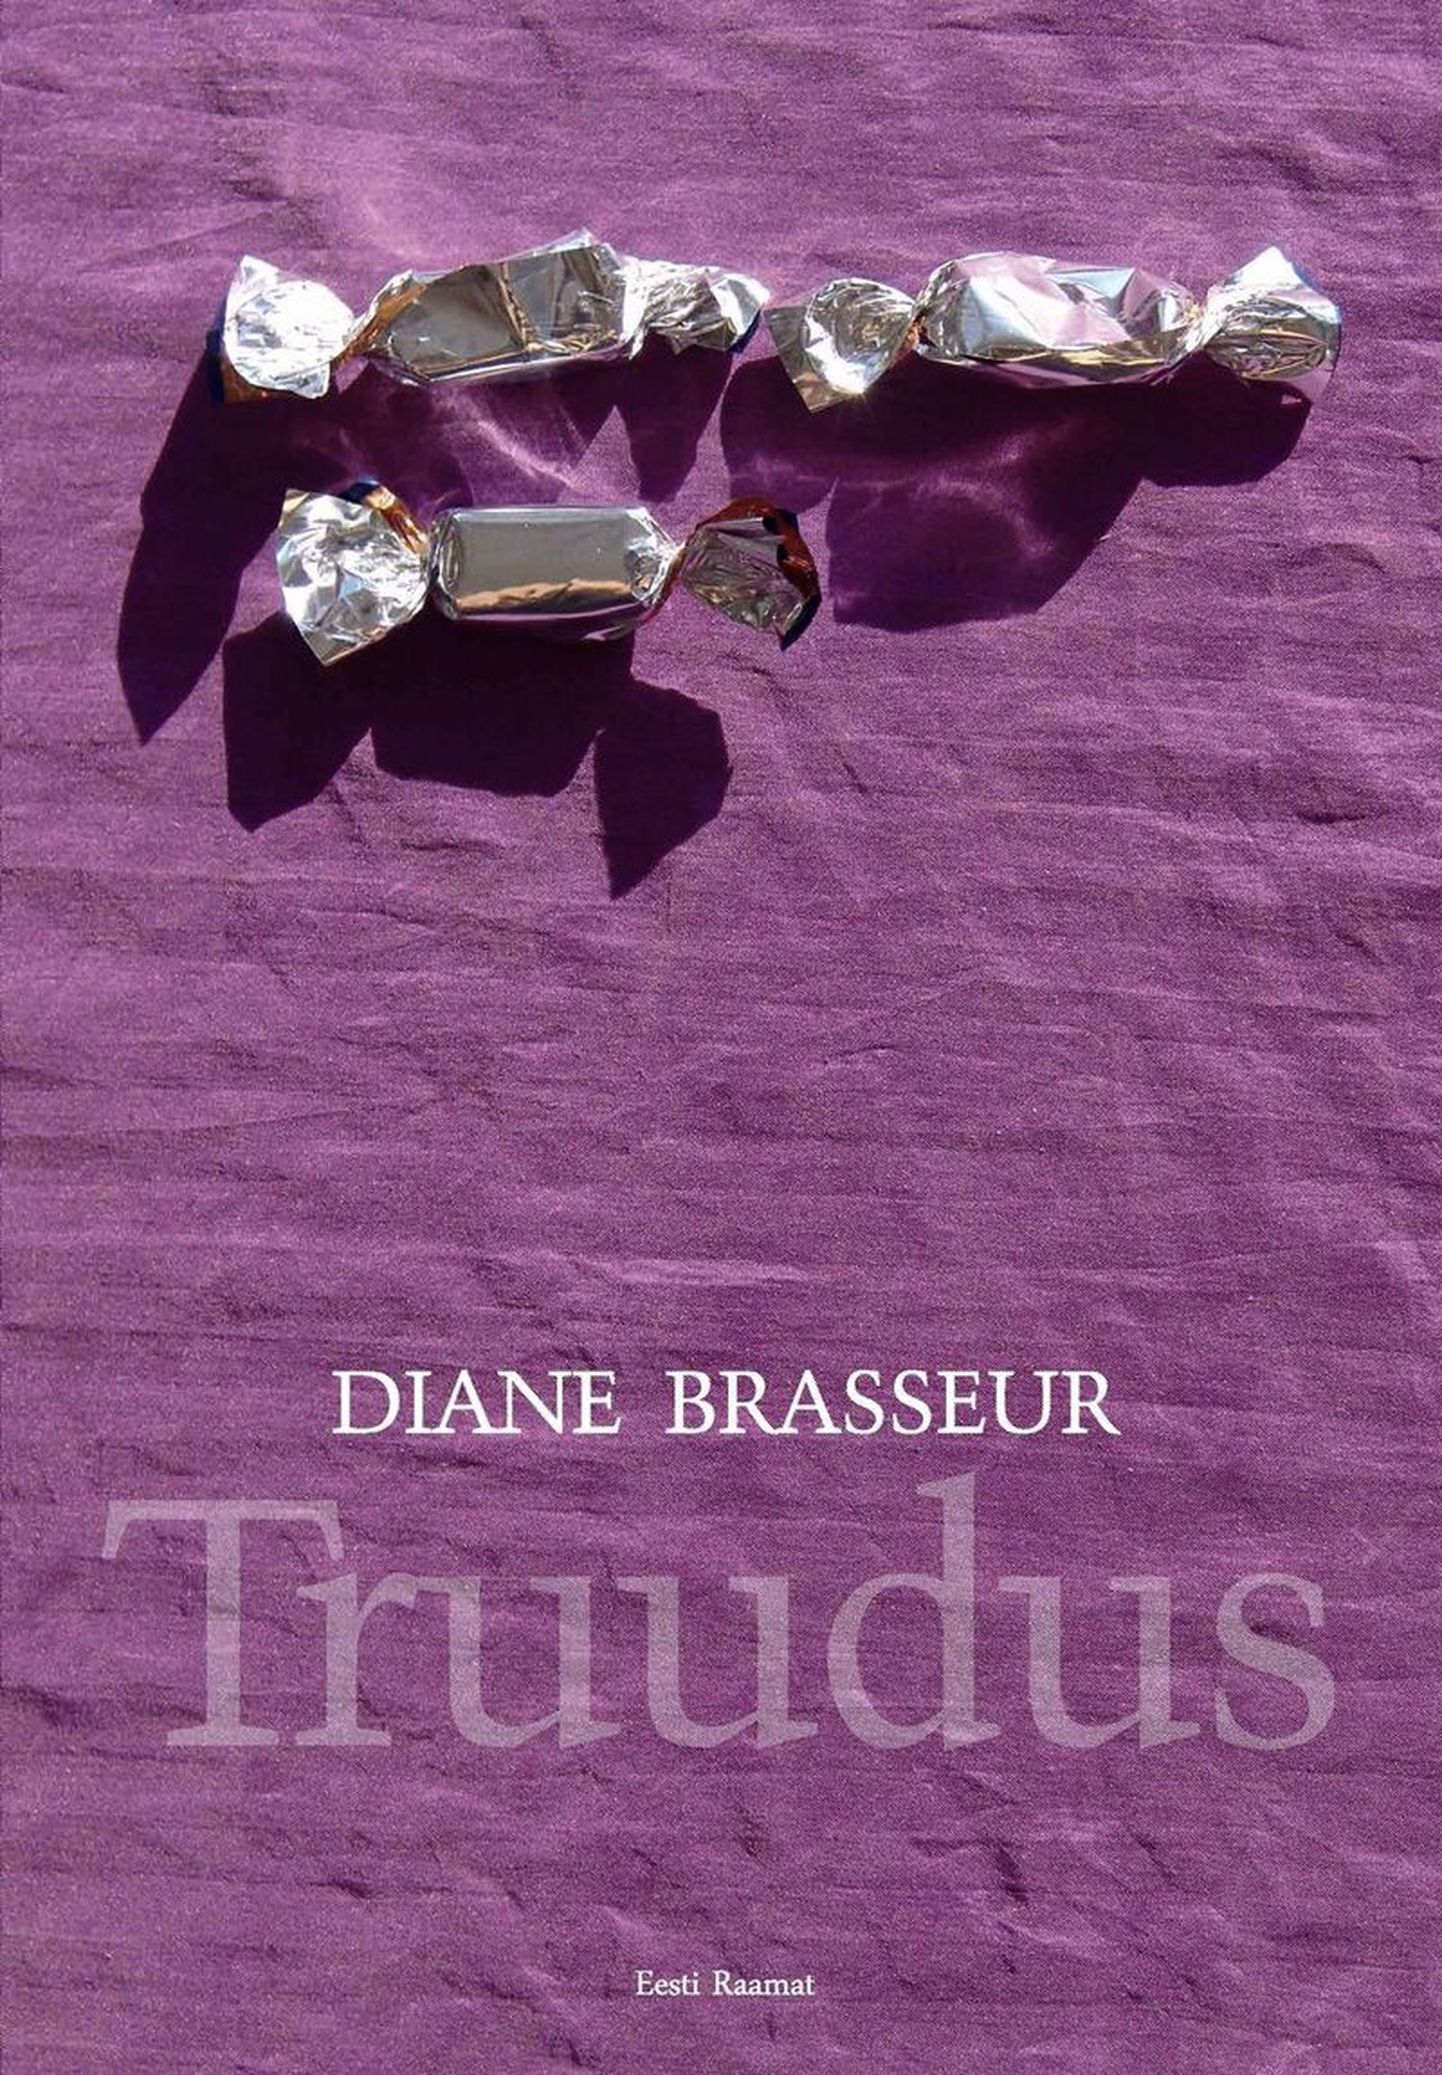 Diane Brasseur “Truudus”